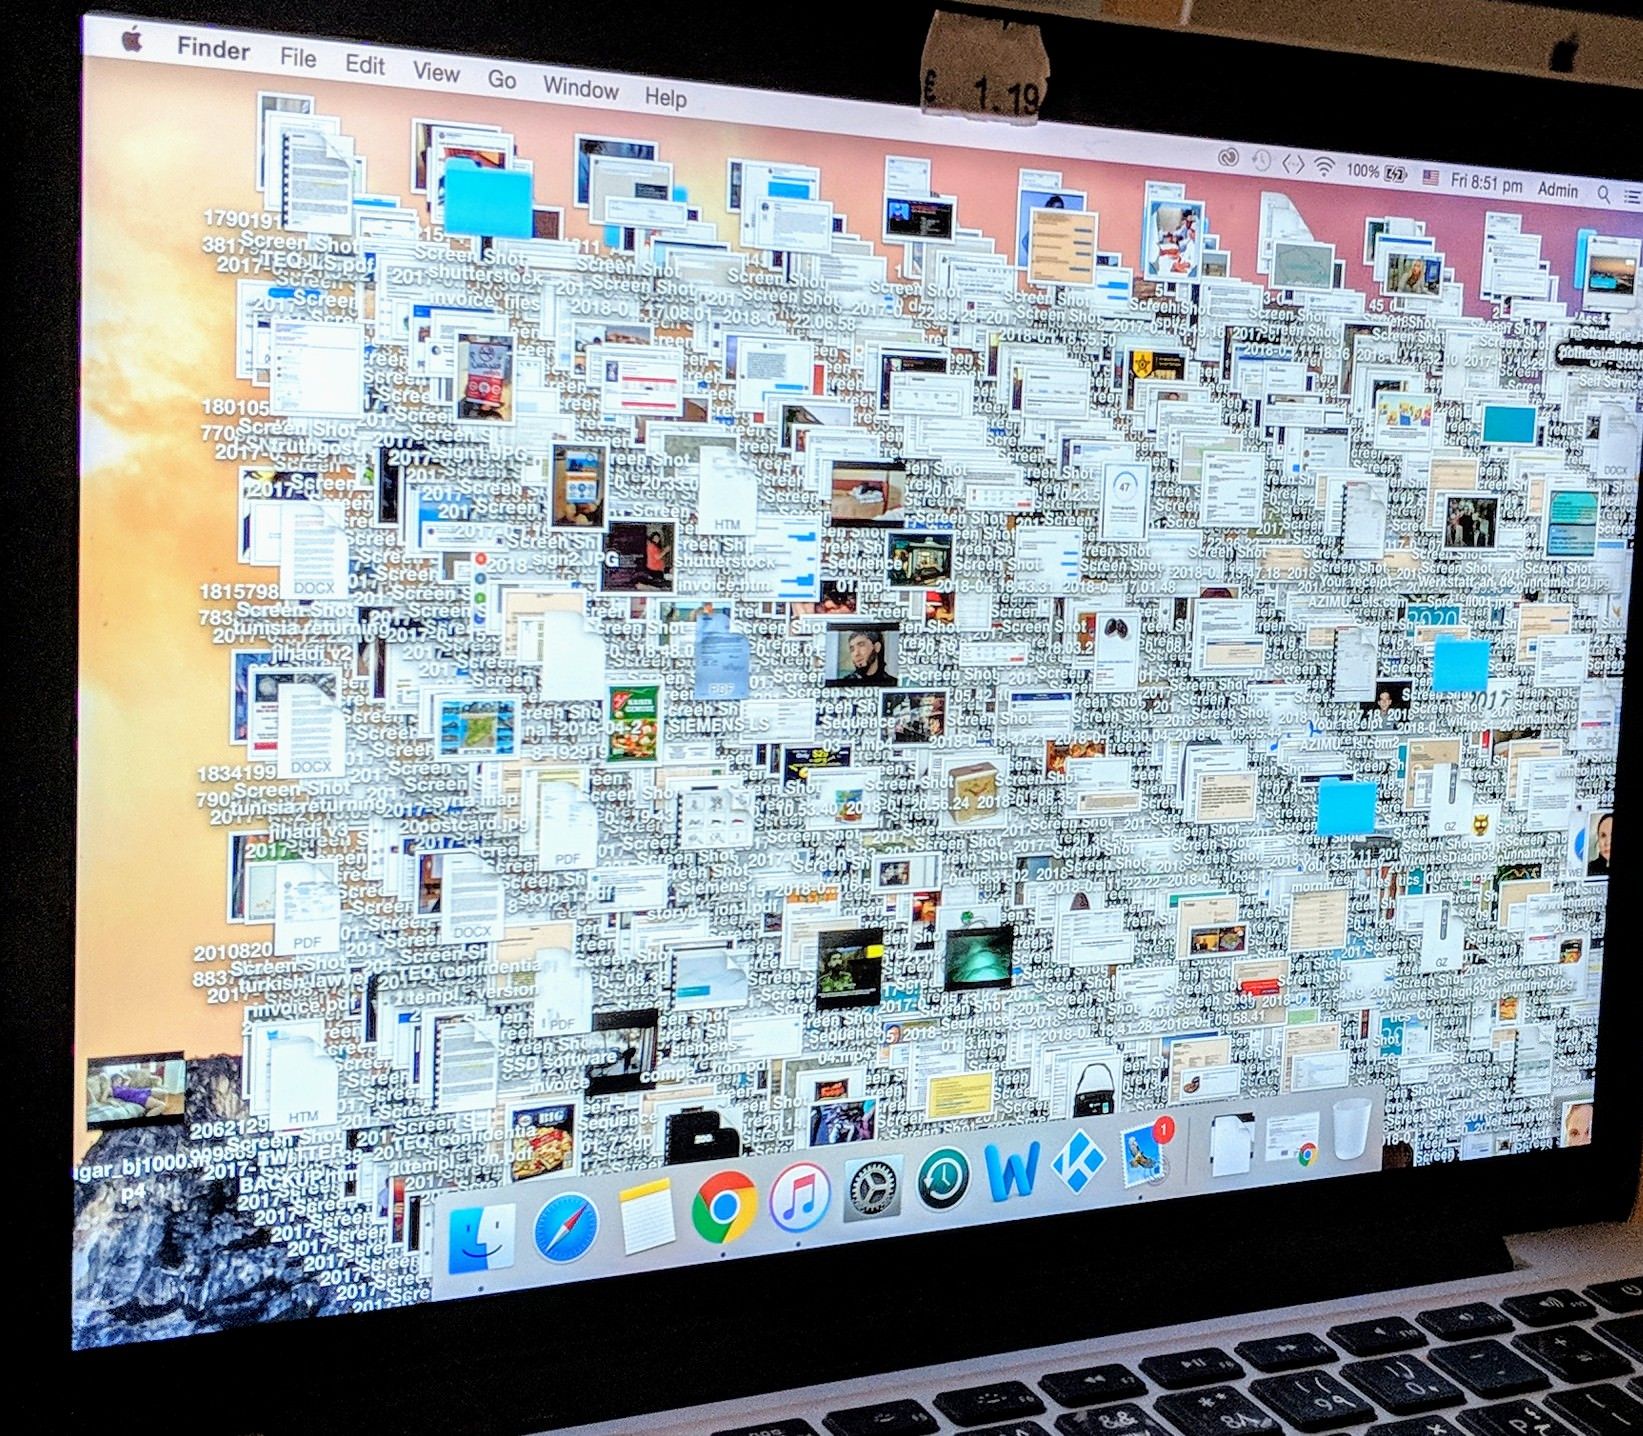 girlfriend's desktop...dear jesus